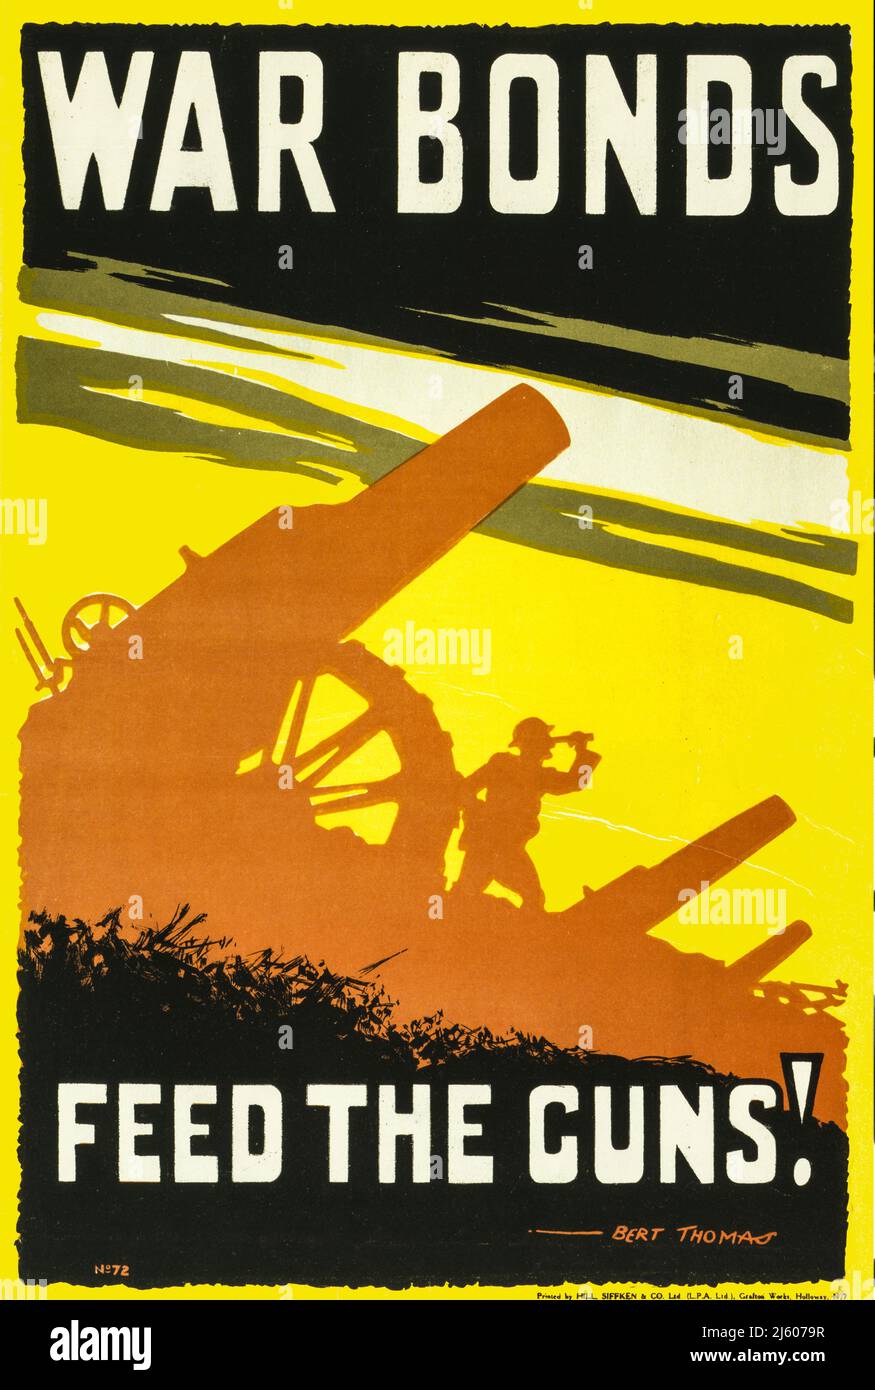 Un manifesto pubblicitario britannico per i War Bonds del 1915, con lo slogan "Feed the Guns" e una serie di artiglieria, con il soldato che guarda attraverso un telescopio. L'artista fu Bert Thomas (1883-1966). Foto Stock